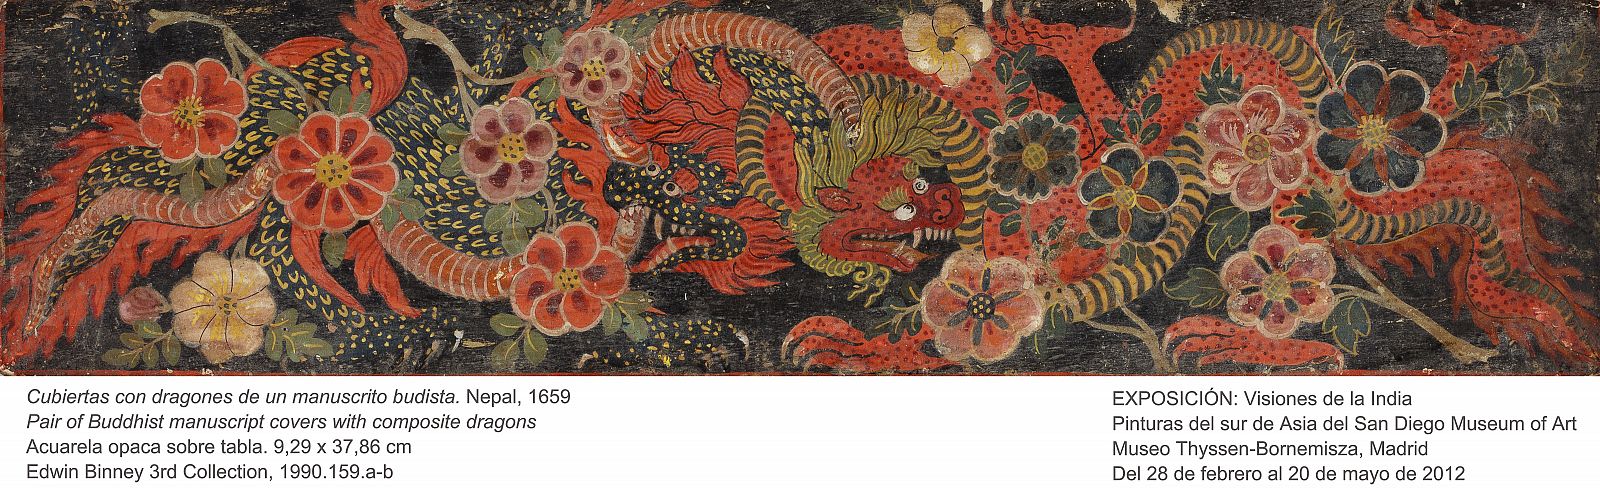 Cubiertas con dragones de un manuscrito budista, Nepal 1659. (acuarela opaca sobre tabla) Detalle